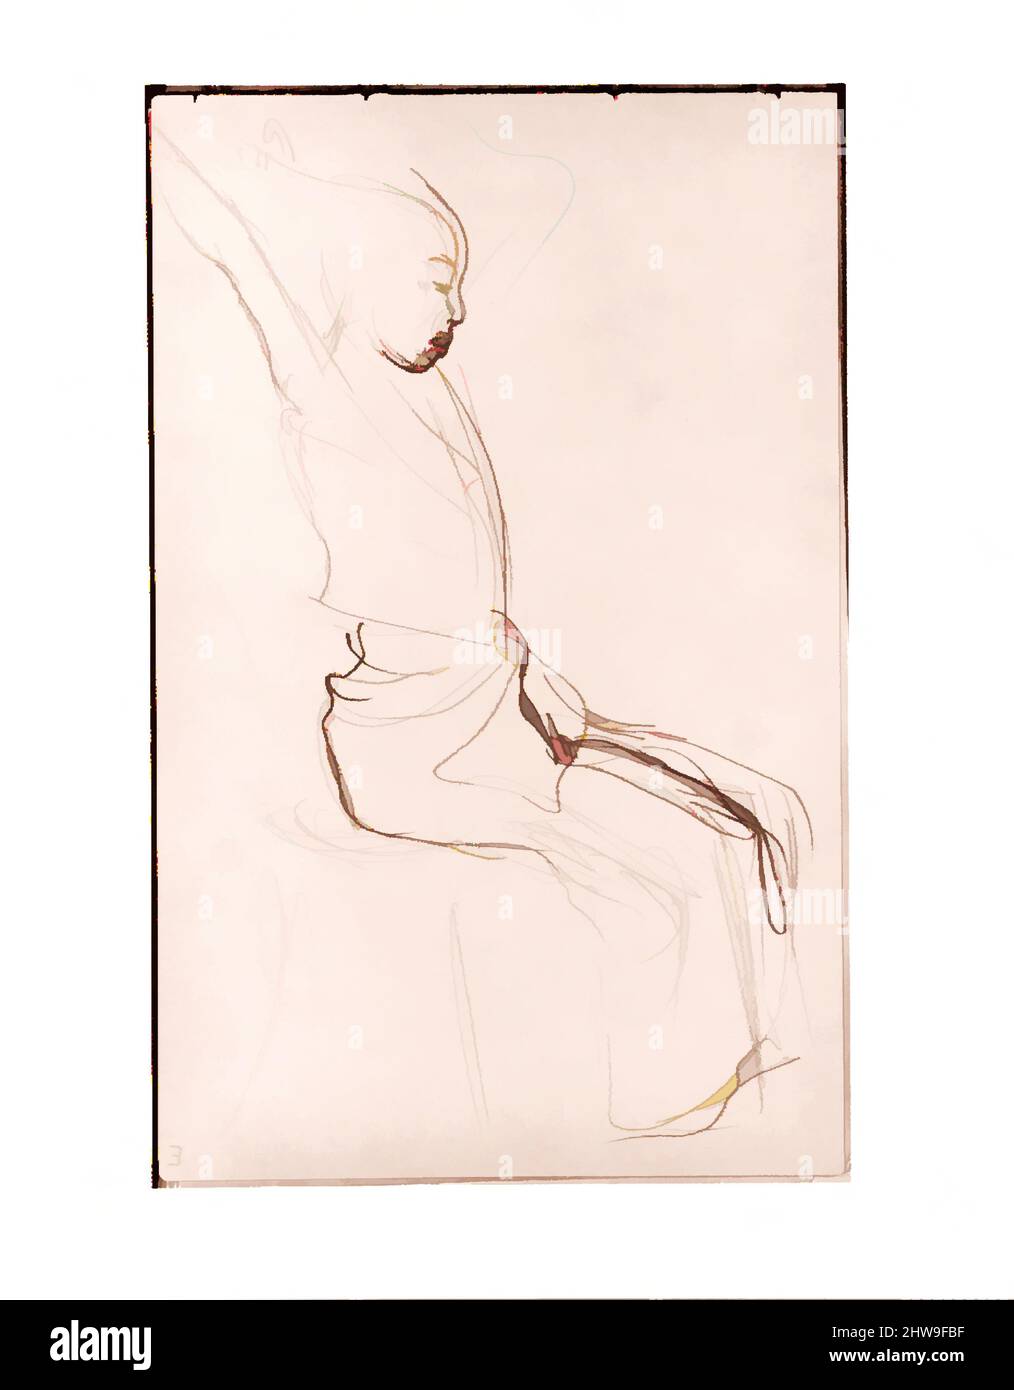 Art inspiré par la danseuse javanaise dans le profil fixant ses cheveux (d'après Sketchbook of Javanese Dancers), 1889, Graphite sur papier vélin blanc cassé, 5 1/2 x 8 1/2 po. (14 x 21,6 cm), dessins, John Singer Sargent (américain, Florence 1856–1925 Londres, œuvres classiques modernisées par Artotop avec une touche de modernité. Formes, couleur et valeur, impact visuel accrocheur sur l'art émotions par la liberté d'œuvres d'art d'une manière contemporaine. Un message intemporel qui cherche une nouvelle direction créative. Artistes qui se tournent vers le support numérique et créent le NFT Artotop Banque D'Images